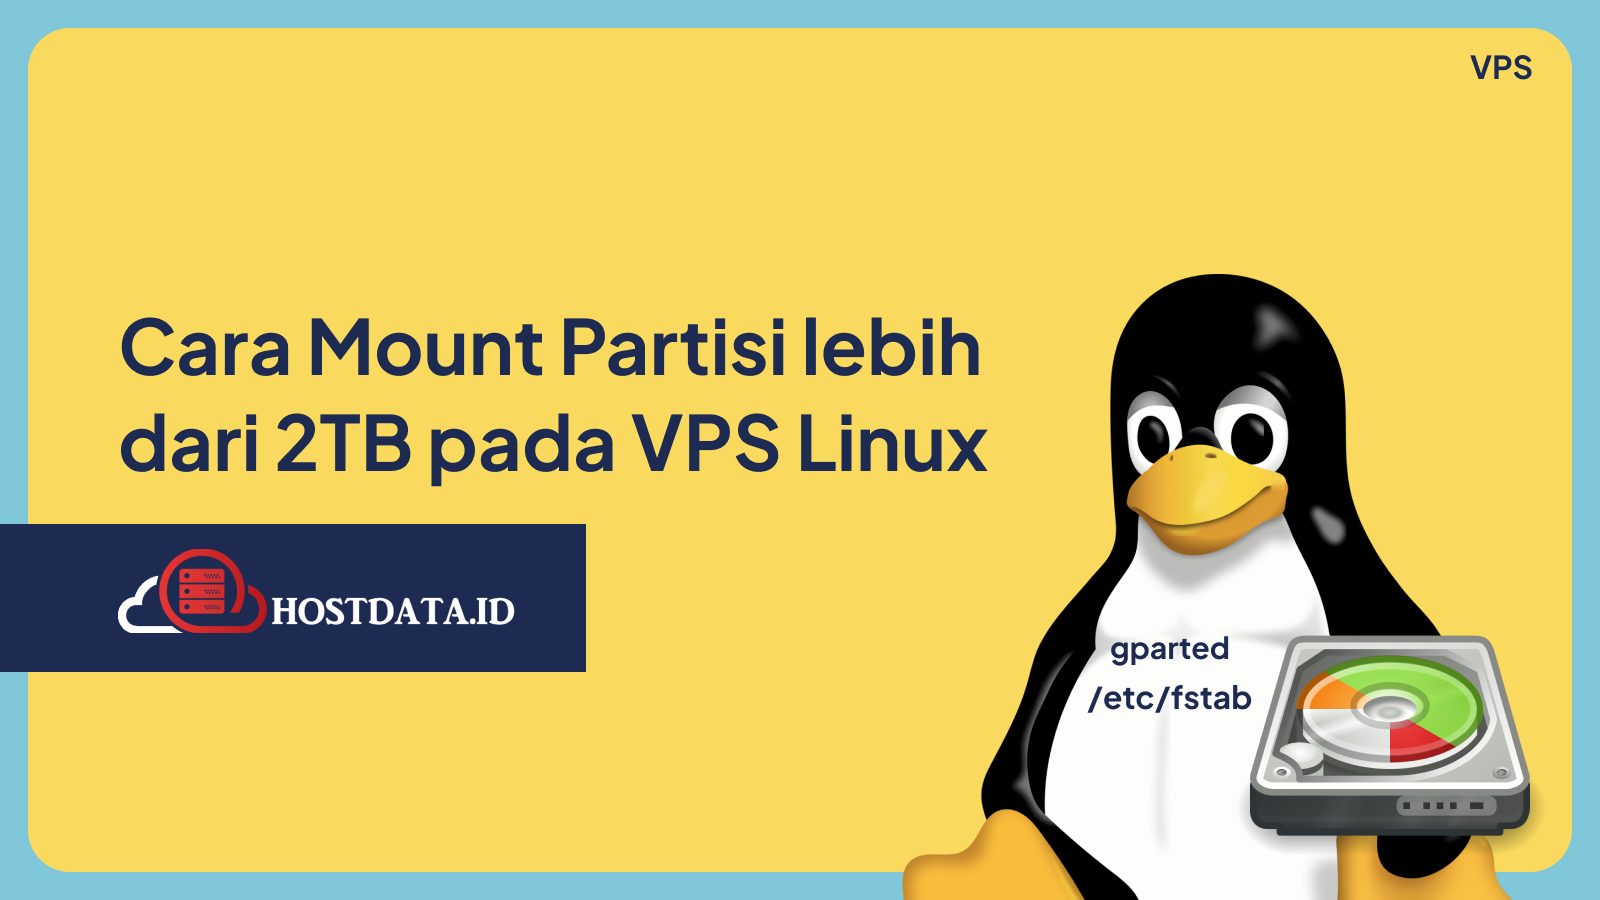 Cara Mount Partisi lebih dari 2TB pada VPS Linux